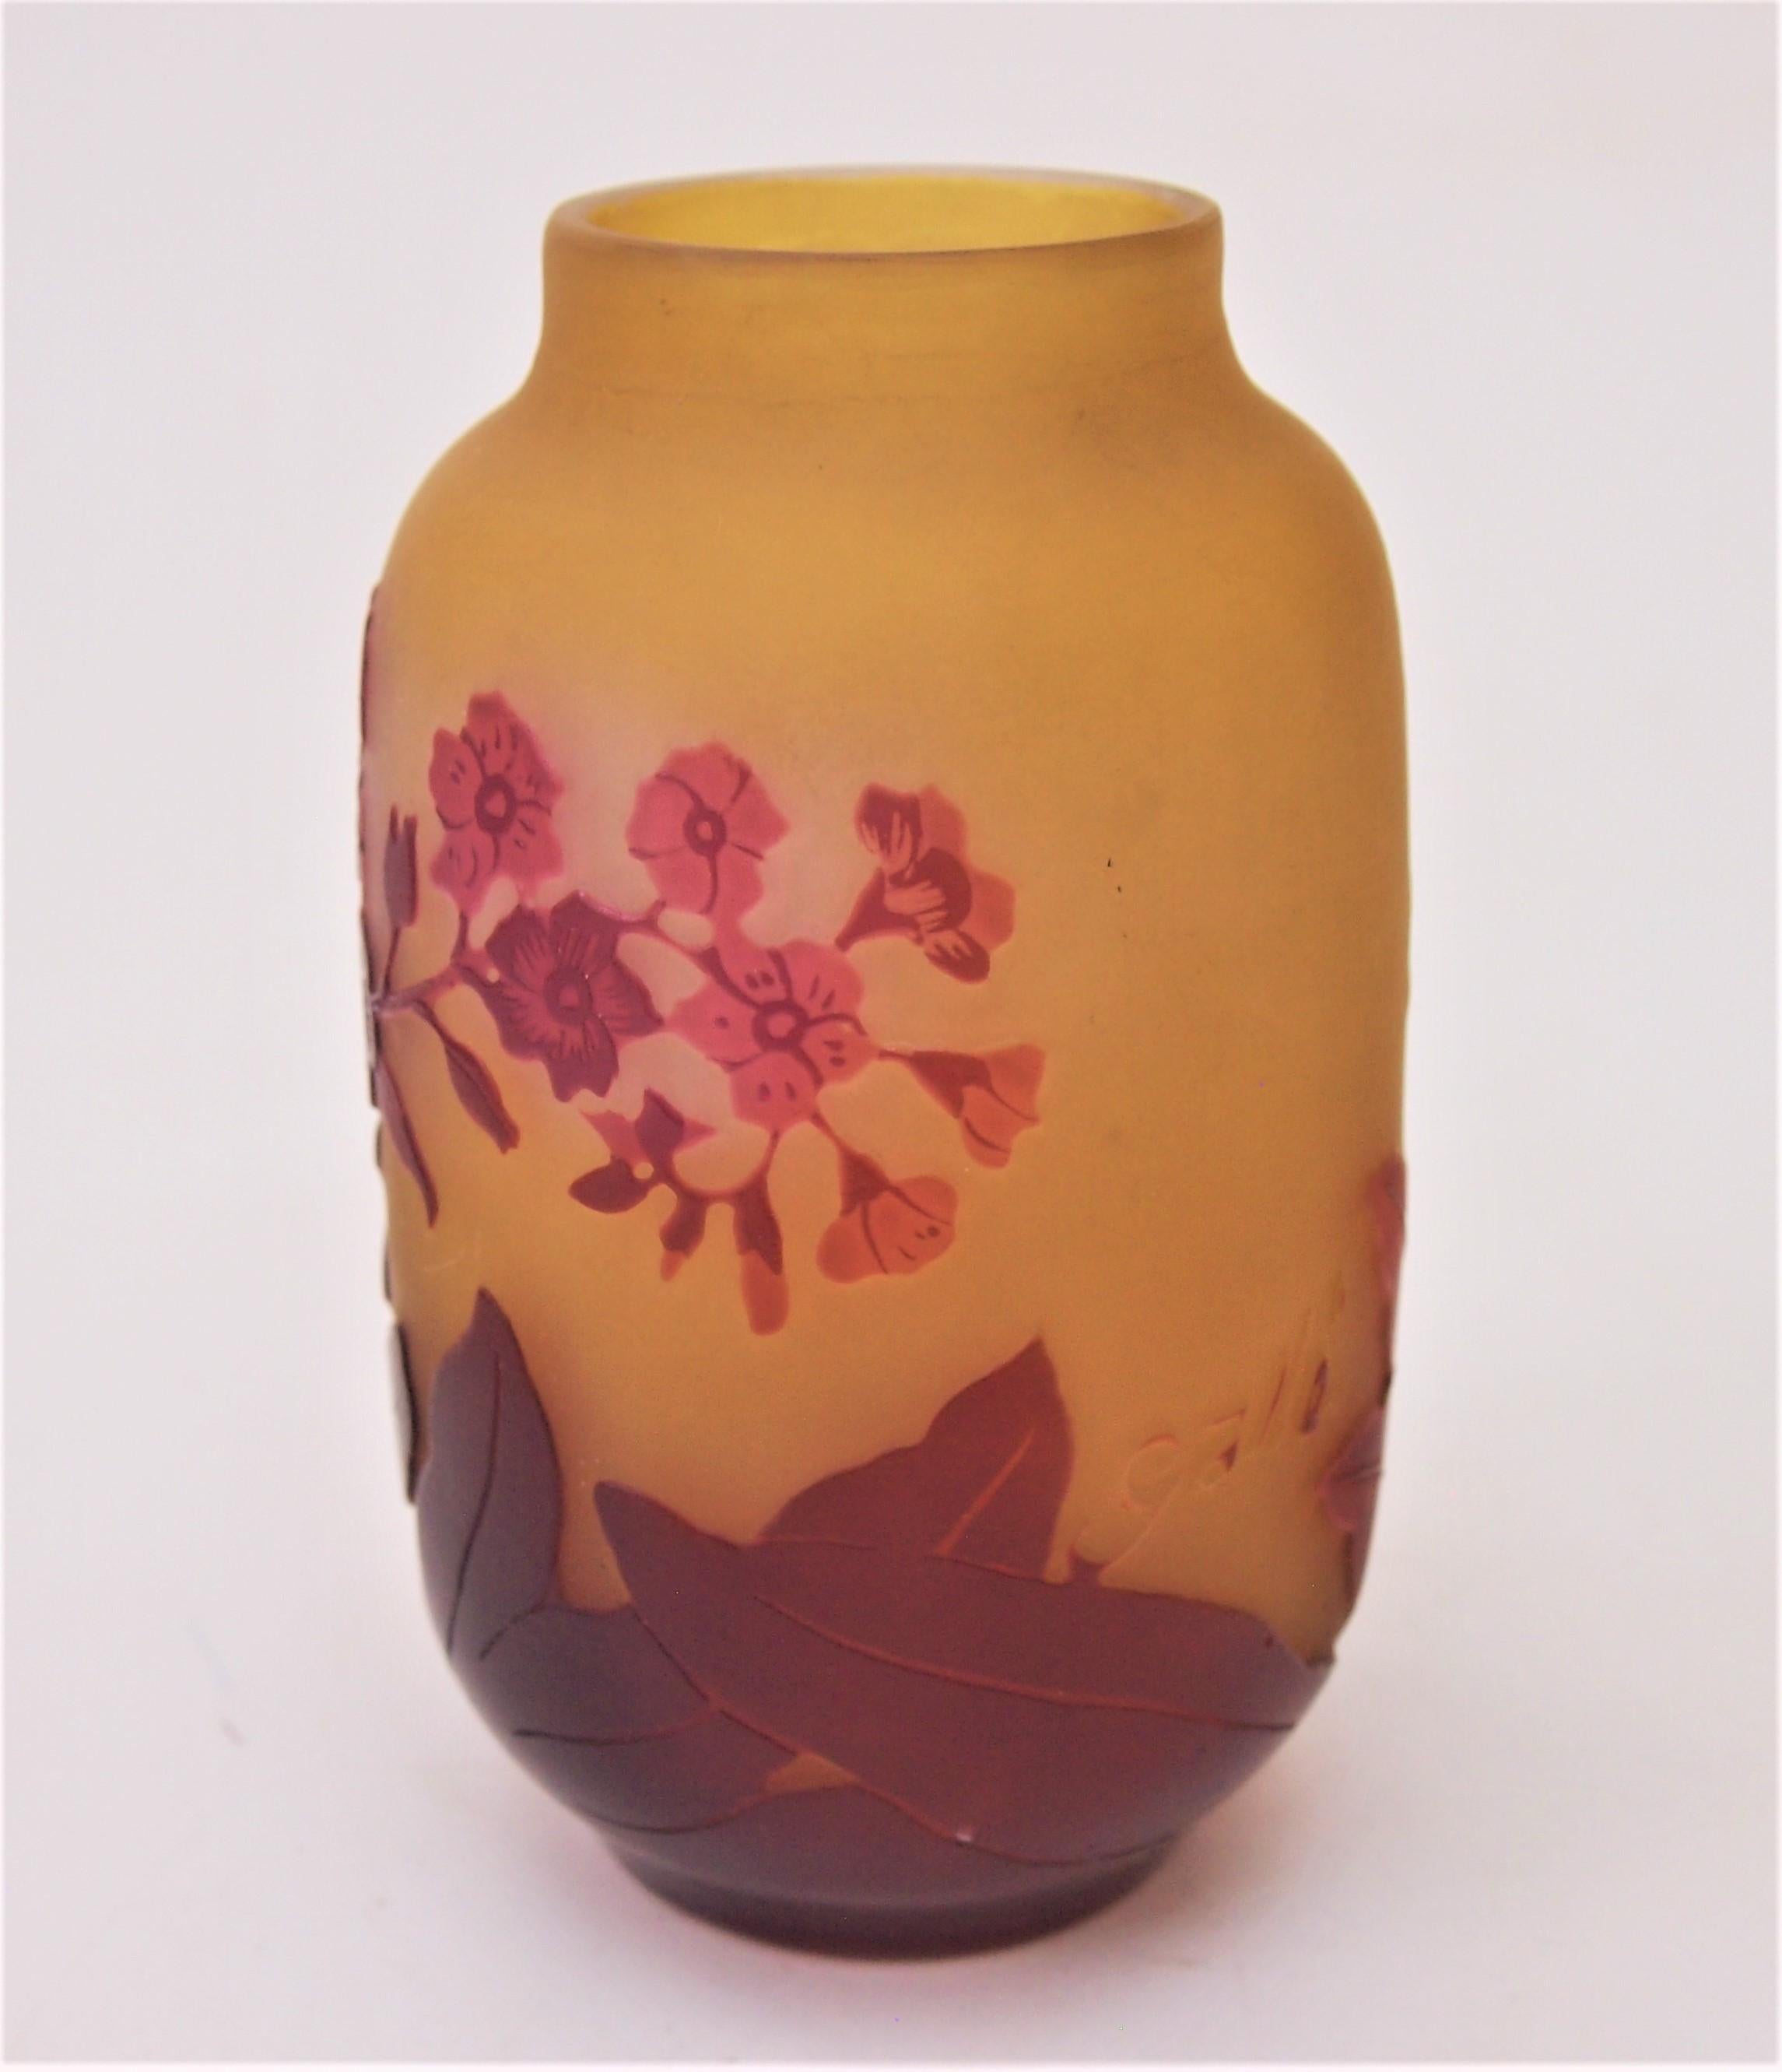 Französischer Jugendstil Emile Gallé kleine Kamee-Vase, die Blumen in Rottönen über Orange darstellt, mit feiner Innenpolitur, um das Rot in den Gänseblümchen hervorzuheben, (dies wird manchmal als Fensterscheibentechnik bezeichnet, eine der